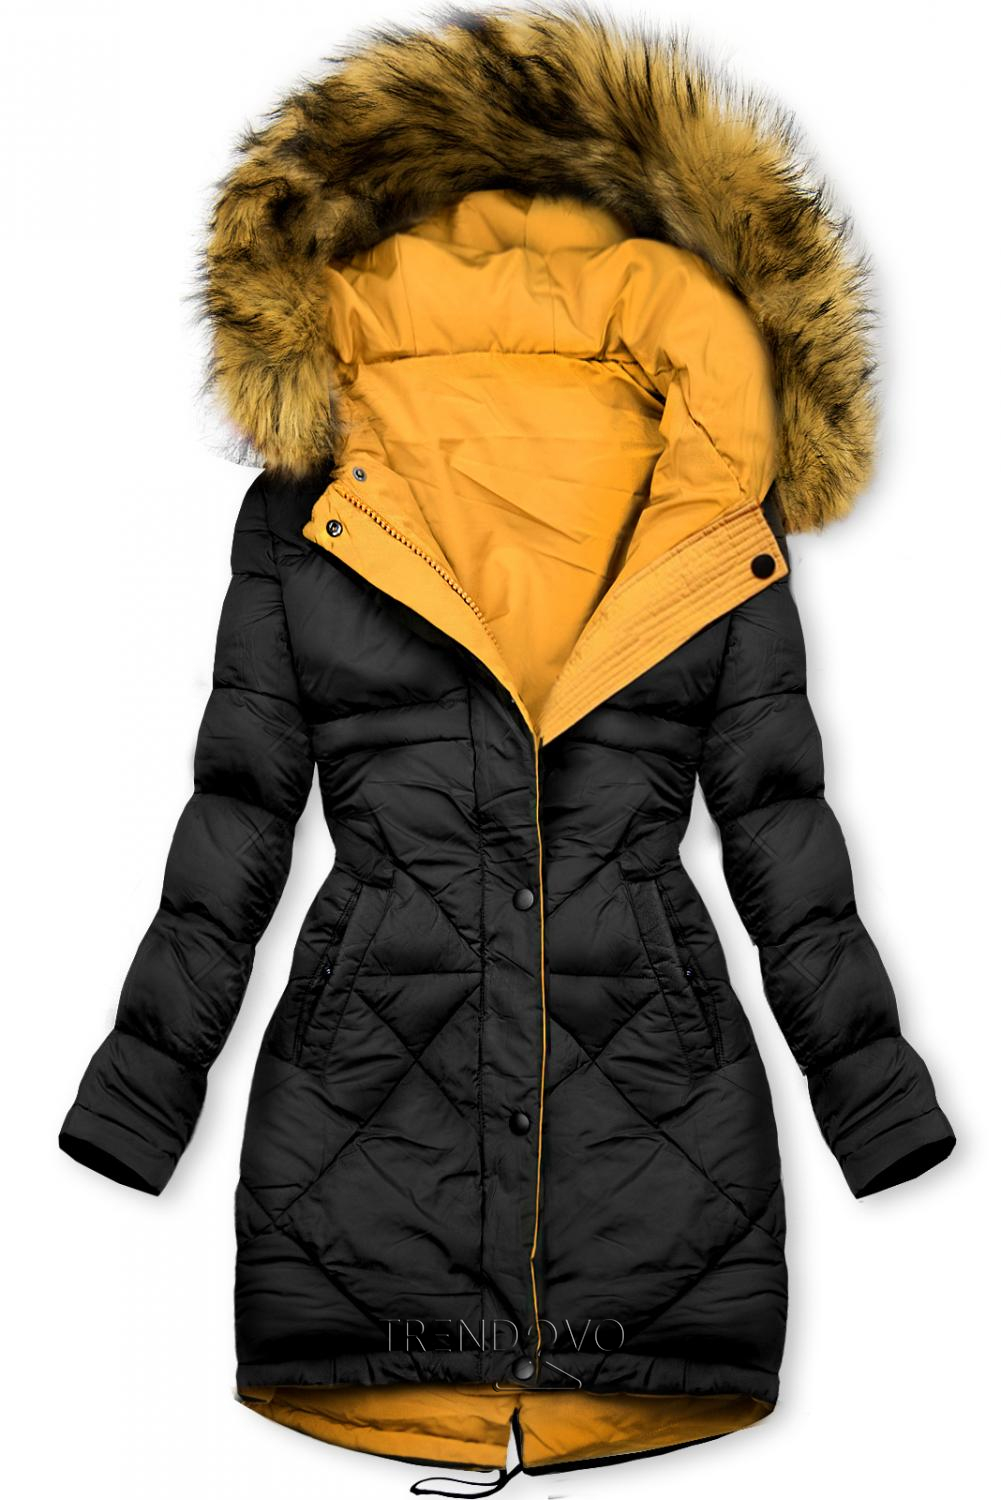 Žlto-čierna obojstranná zimná bunda